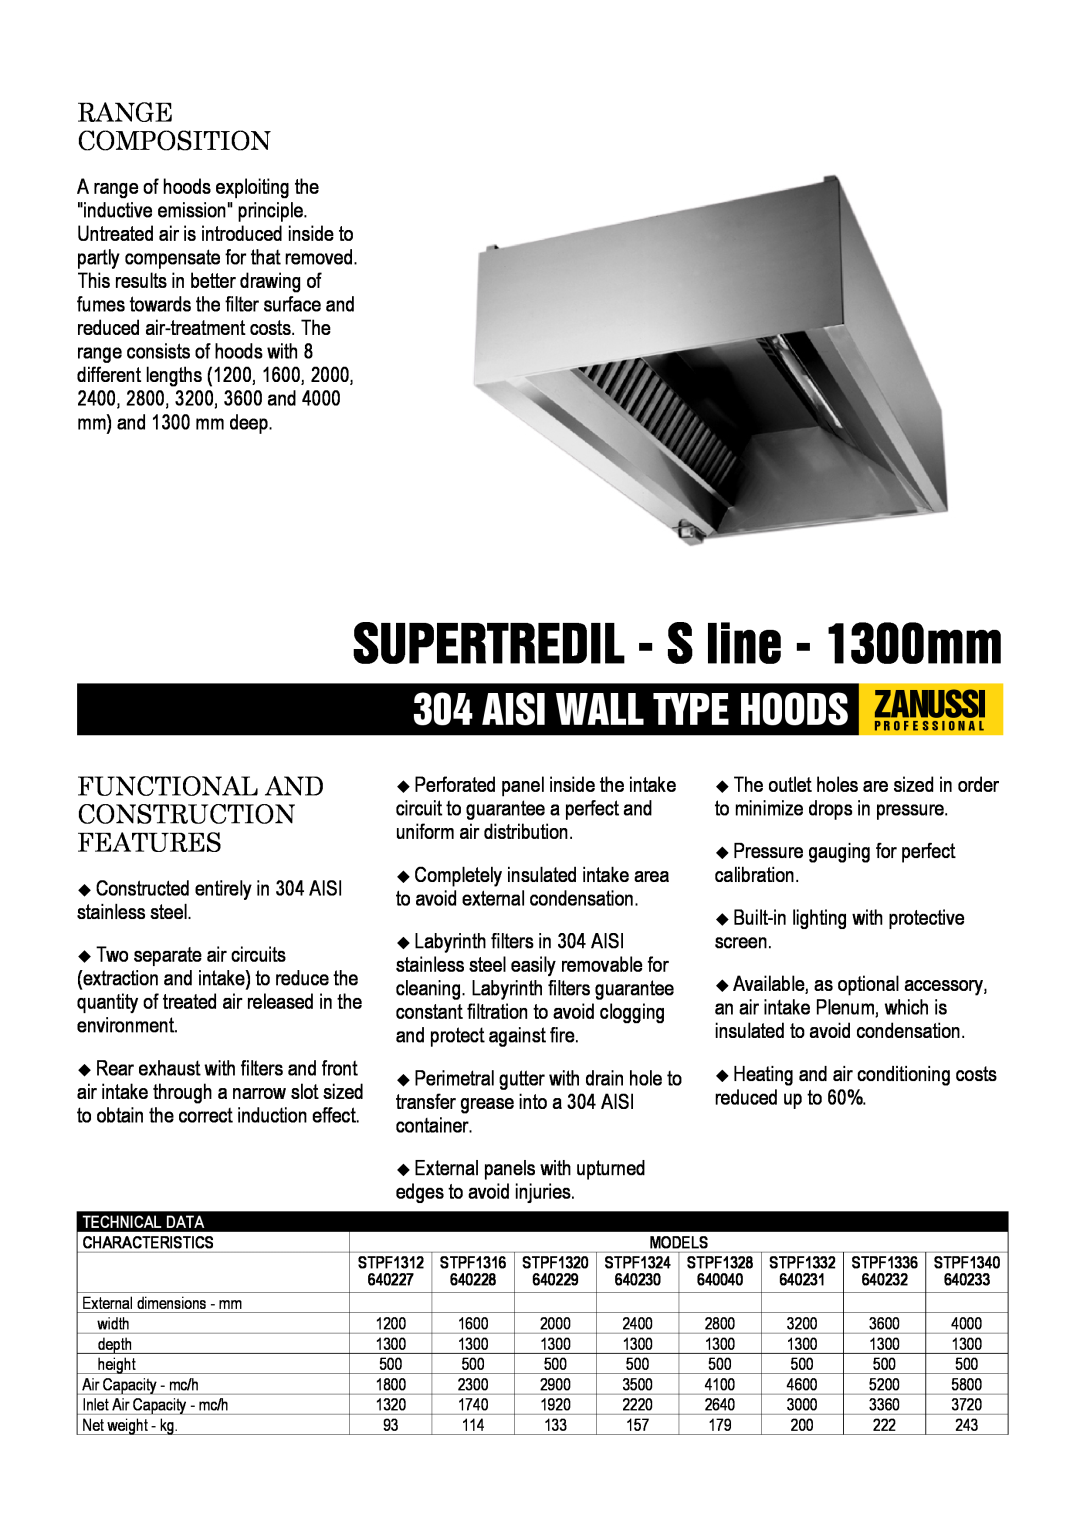 Zanussi STPF1340, STPF1336 dimensions SUPERTREDIL - S line - 1300mm, Aisi Wall Type Hoods Zanussip R O F E S S I O N A L 